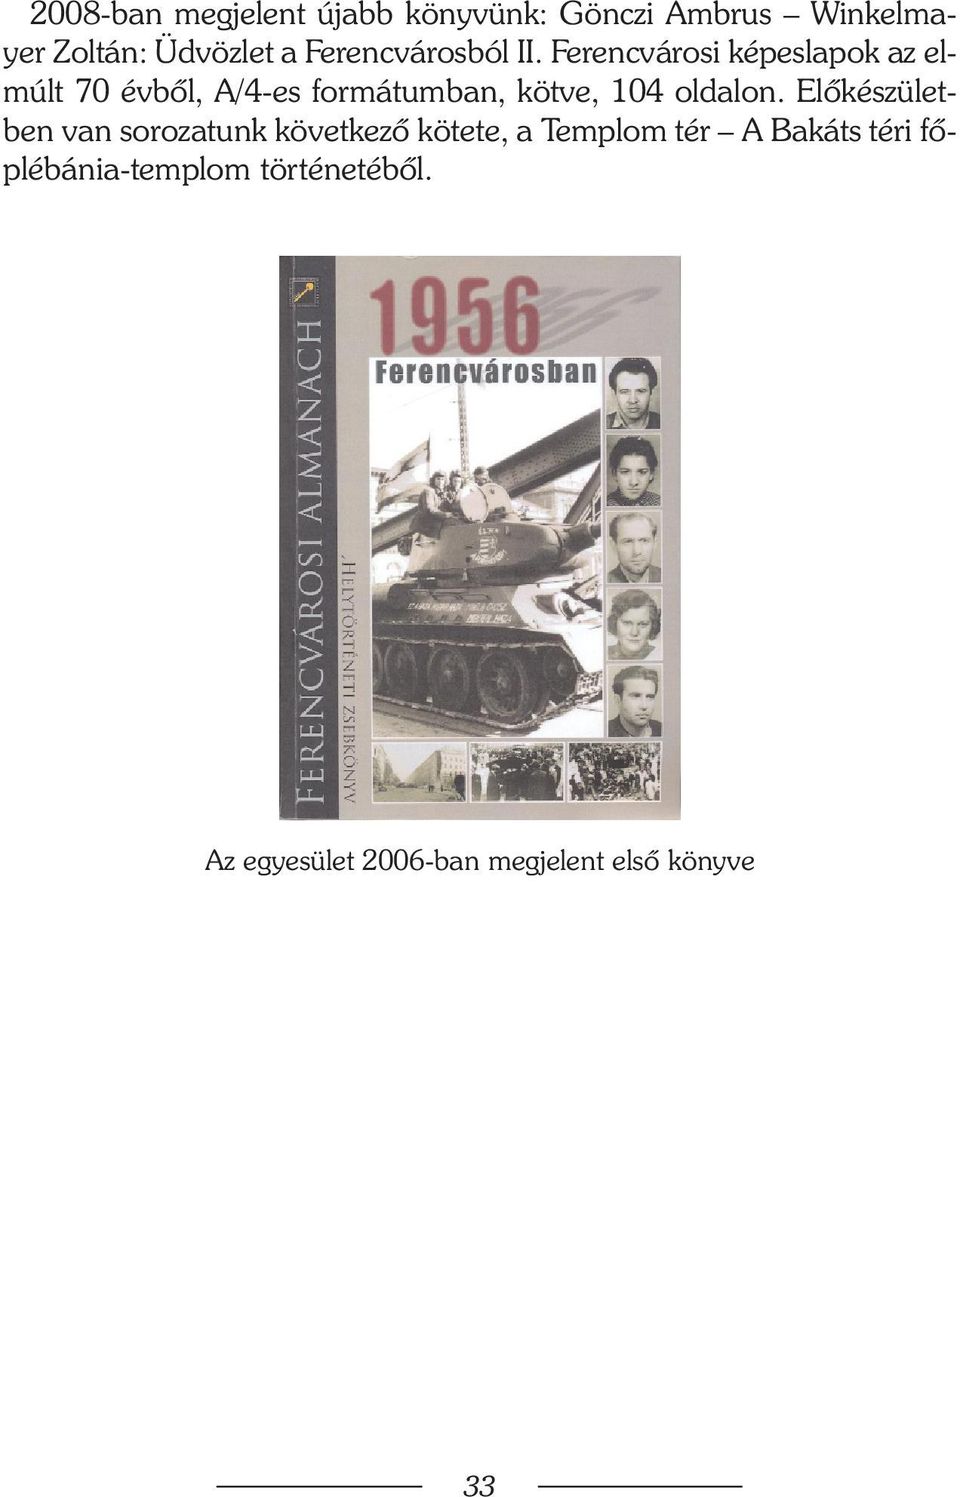 Ferencvárosi képeslapok az elmúlt 70 évbõl, A/4-es formátumban, kötve, 104 oldalon.